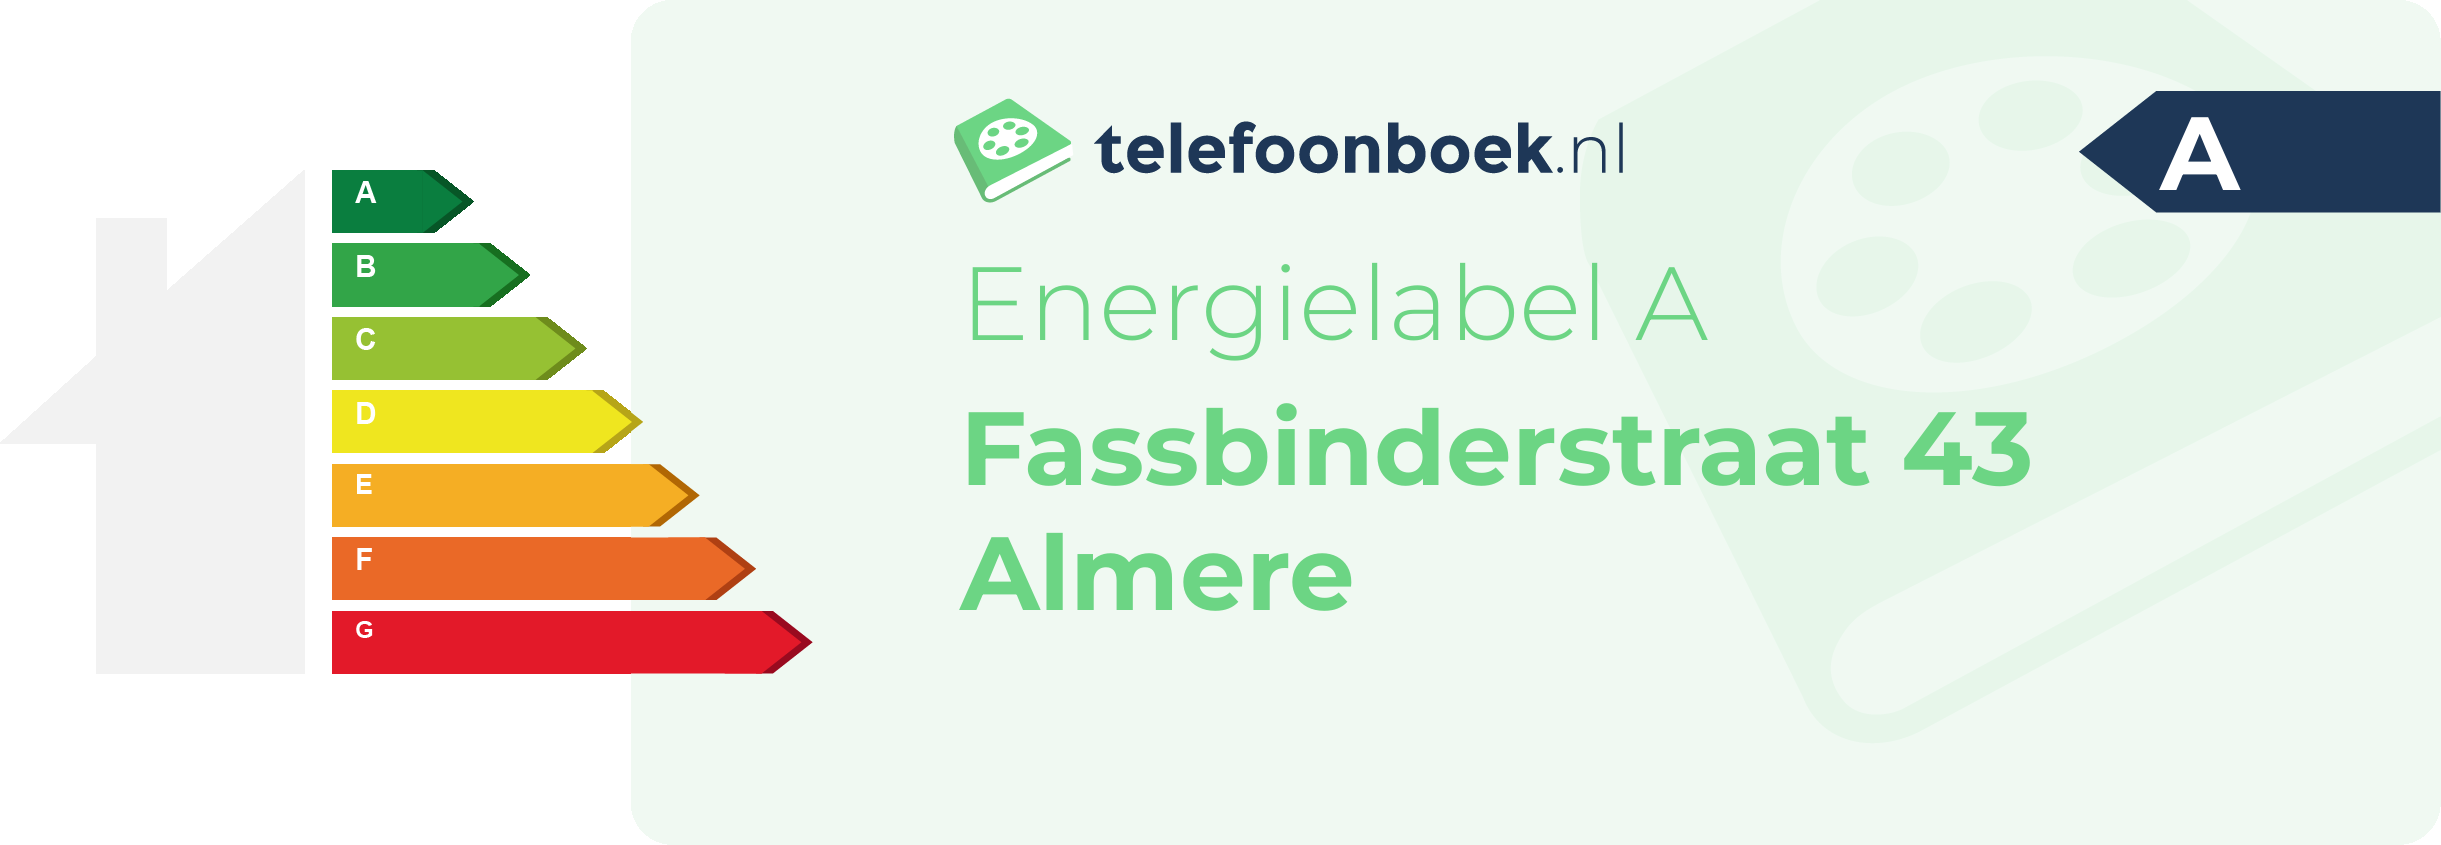 Energielabel Fassbinderstraat 43 Almere